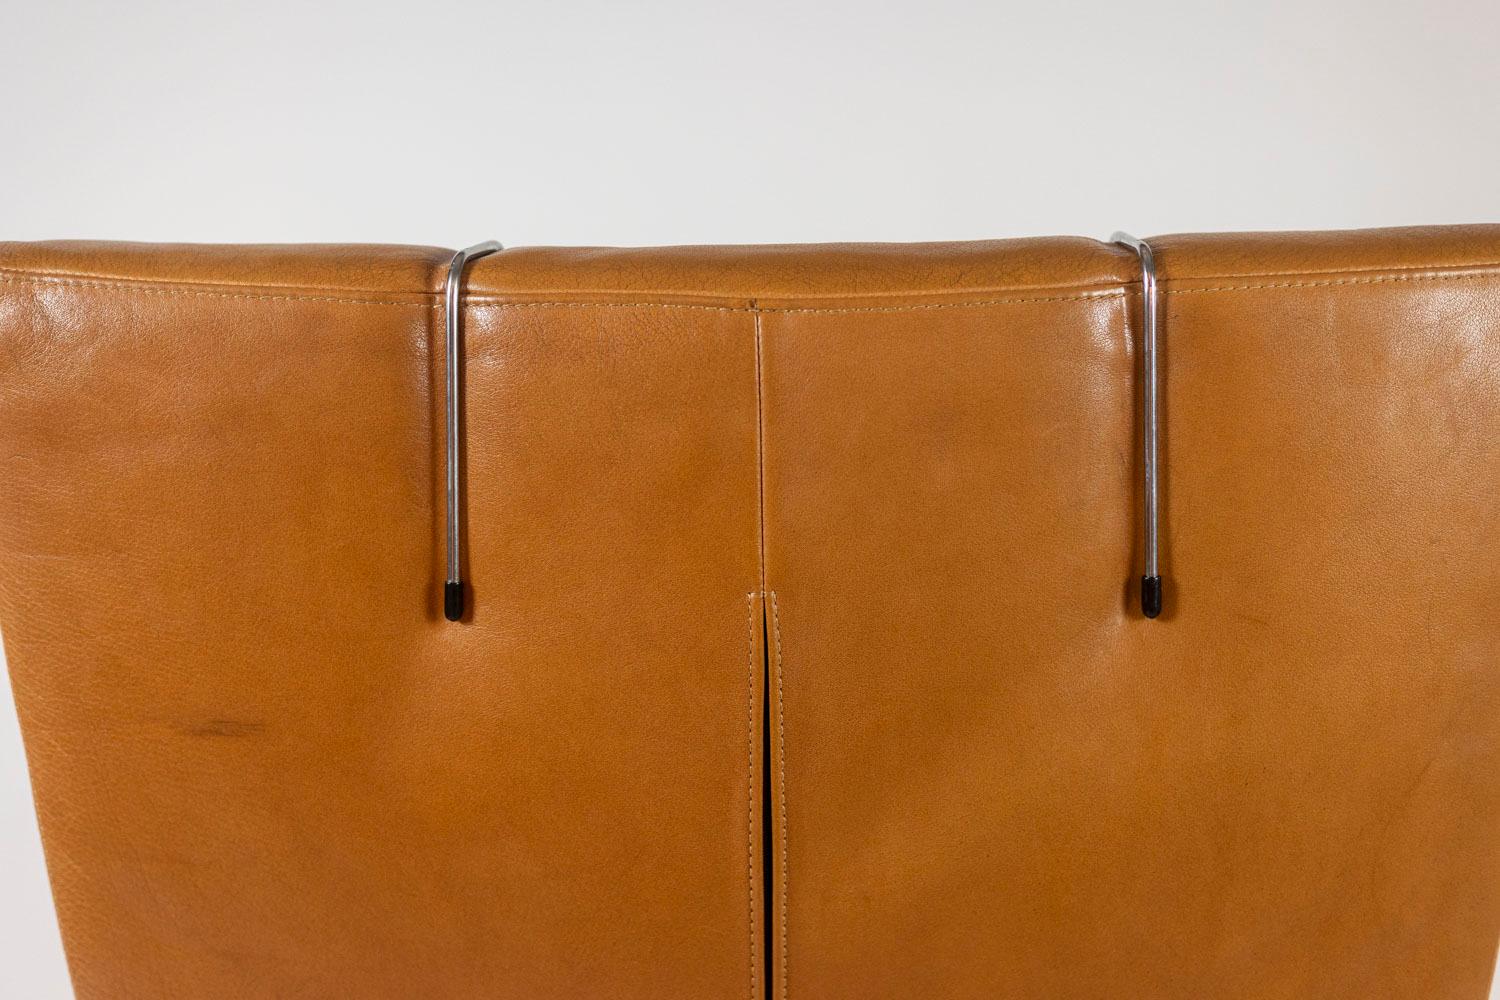 Gerard Van Den Berg, par.

Paire de fauteuils en cuir couleur camel, avec leurs appuis-tête. Base en métal brossé, terminée par de hauts patins en hêtre.

Œuvre néerlandaise réalisée dans les années 1980.

Dimensions : H 100 x L 74,5 x P 74 cm : H